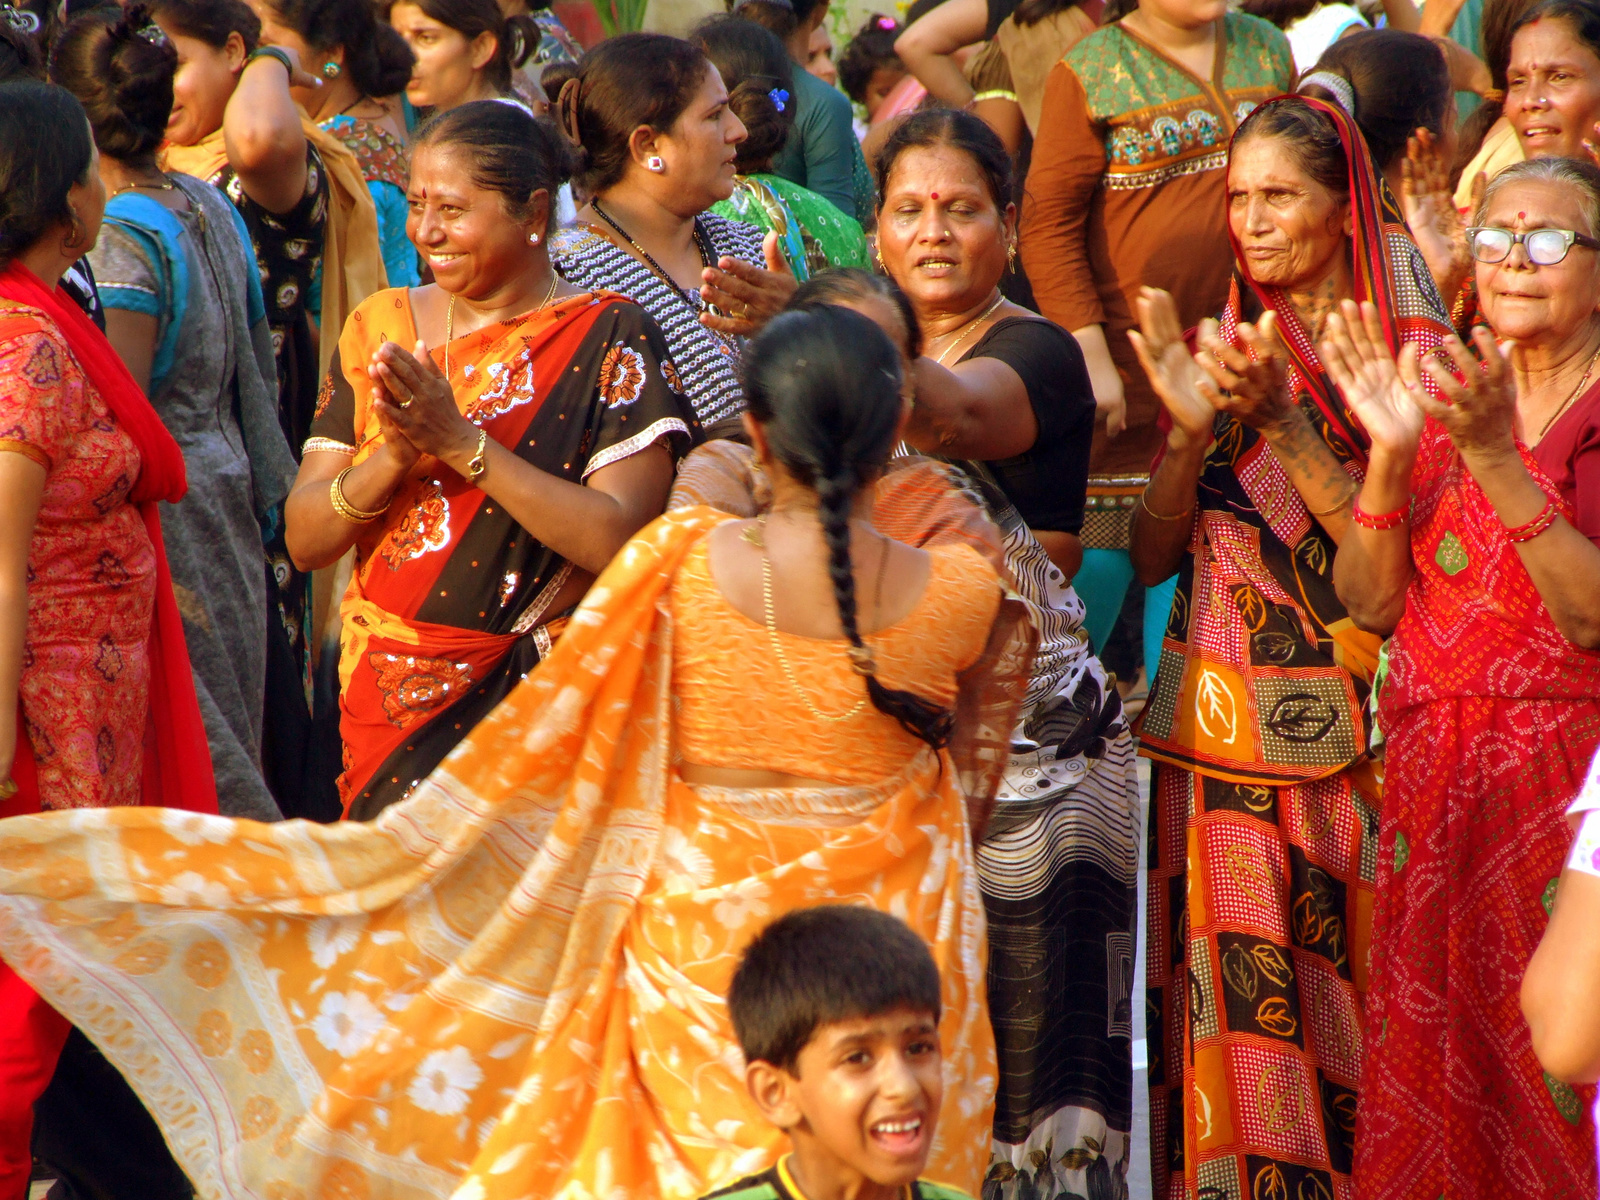 Wagah, az Indiai - Pakisztáni határátkelő - táncolnak a népek 2